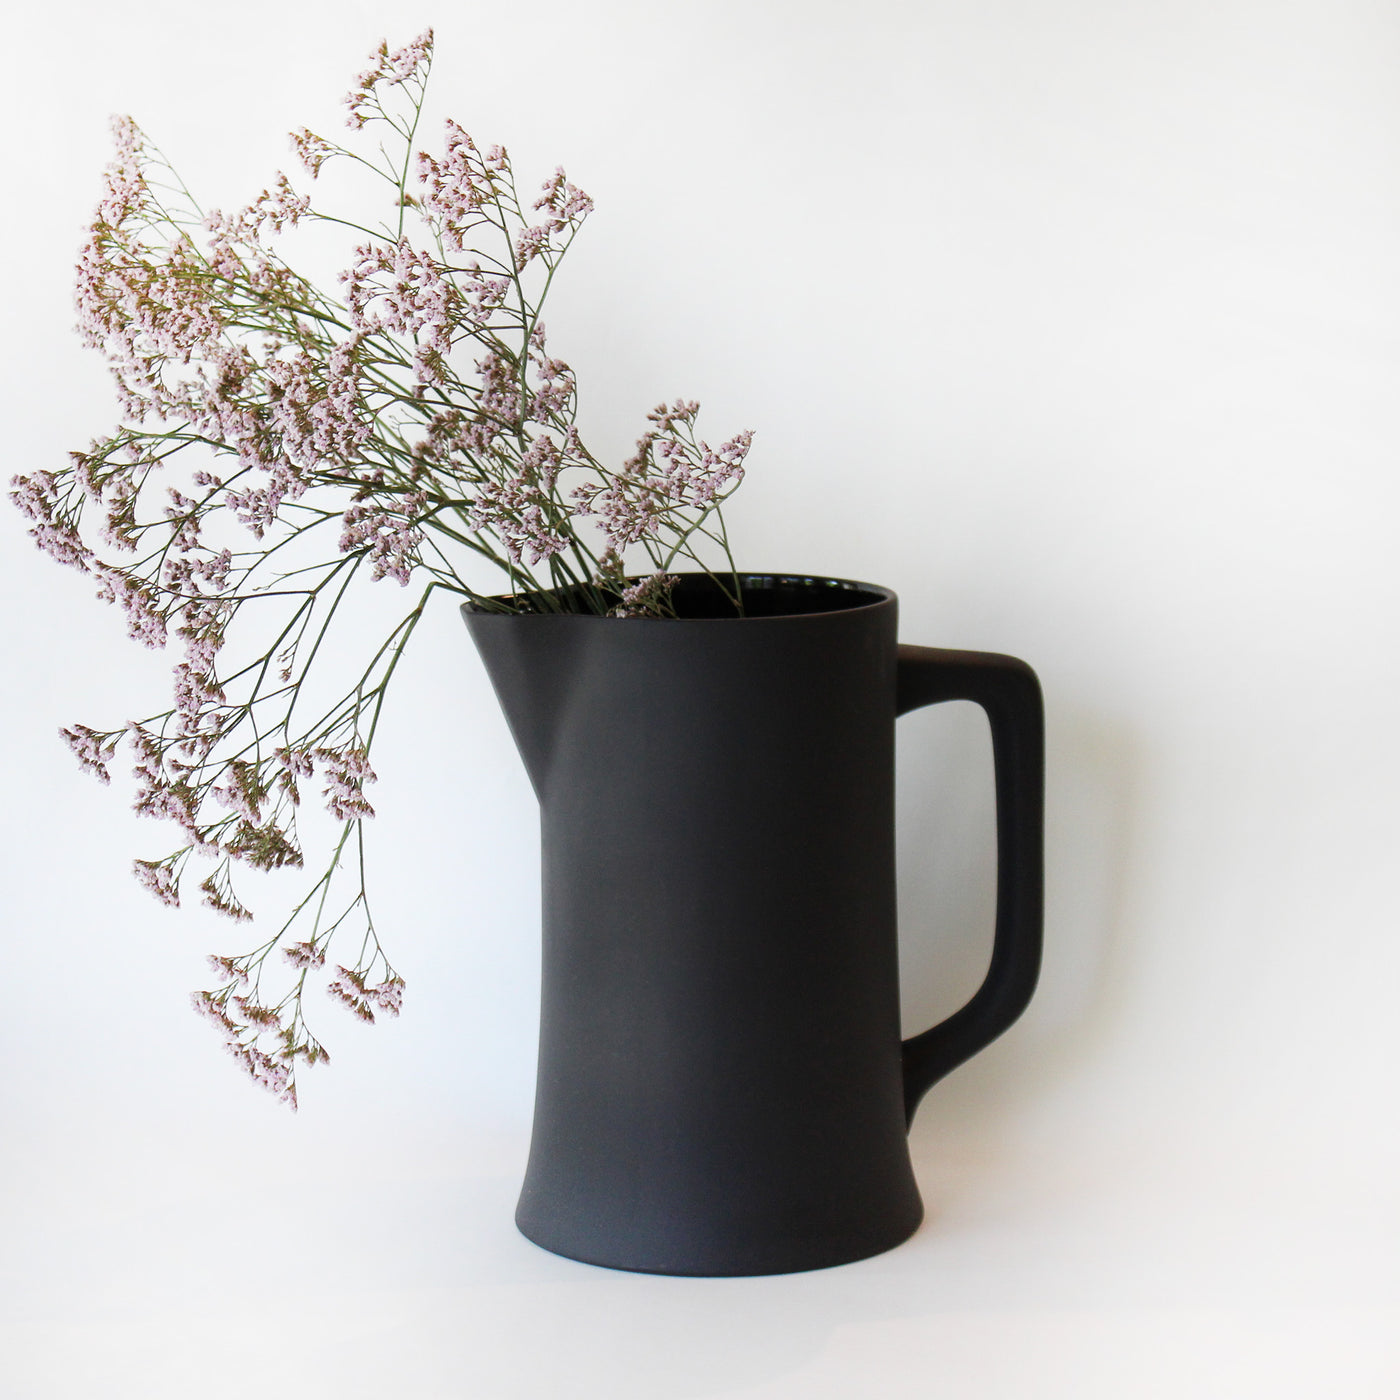 matte black ceramic pitcher or vase